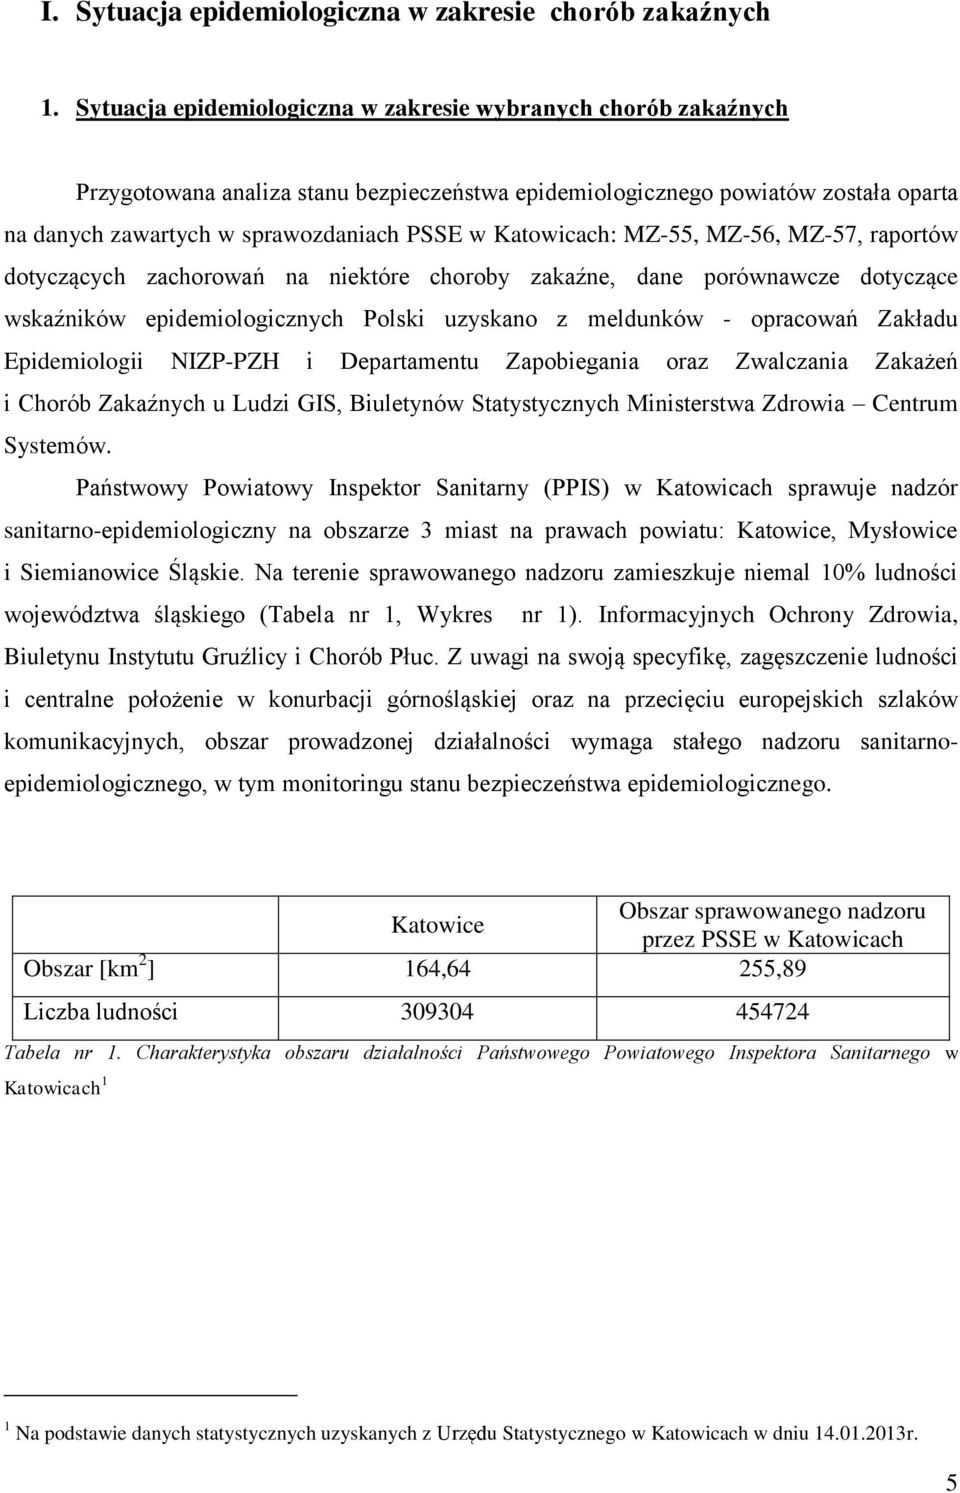 Katowicach: MZ-55, MZ-56, MZ-57, raportów dotyczących zachorowań na niektóre choroby zakaźne, dane porównawcze dotyczące wskaźników epidemiologicznych Polski uzyskano z meldunków - opracowań Zakładu